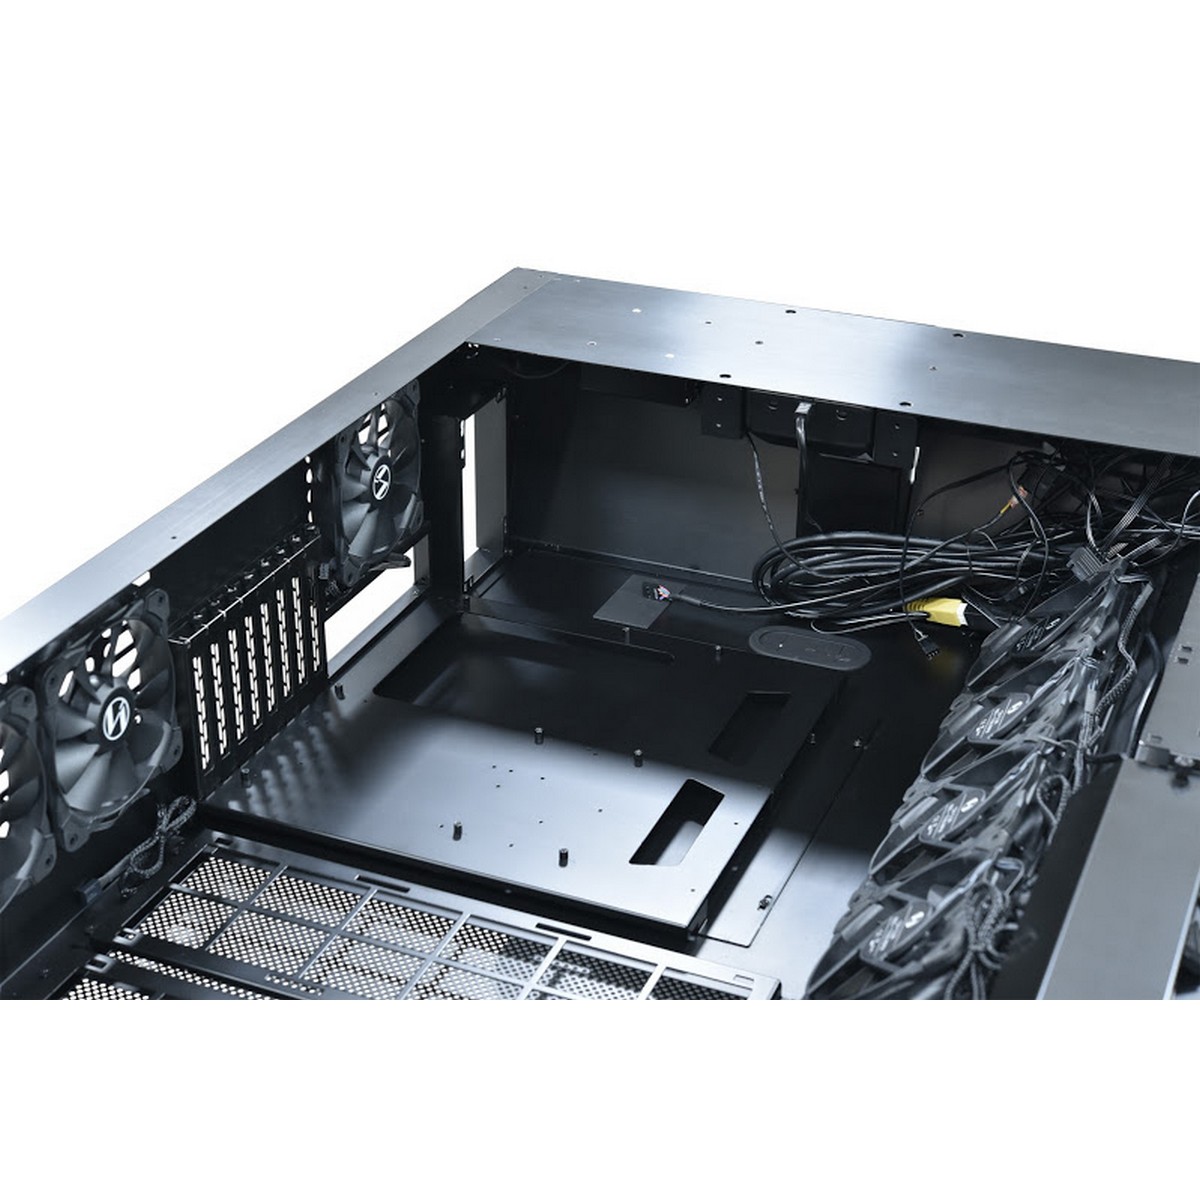 Lian Li - Lian Li DK-05F Electrical Height Adjustable Desk Case - Black